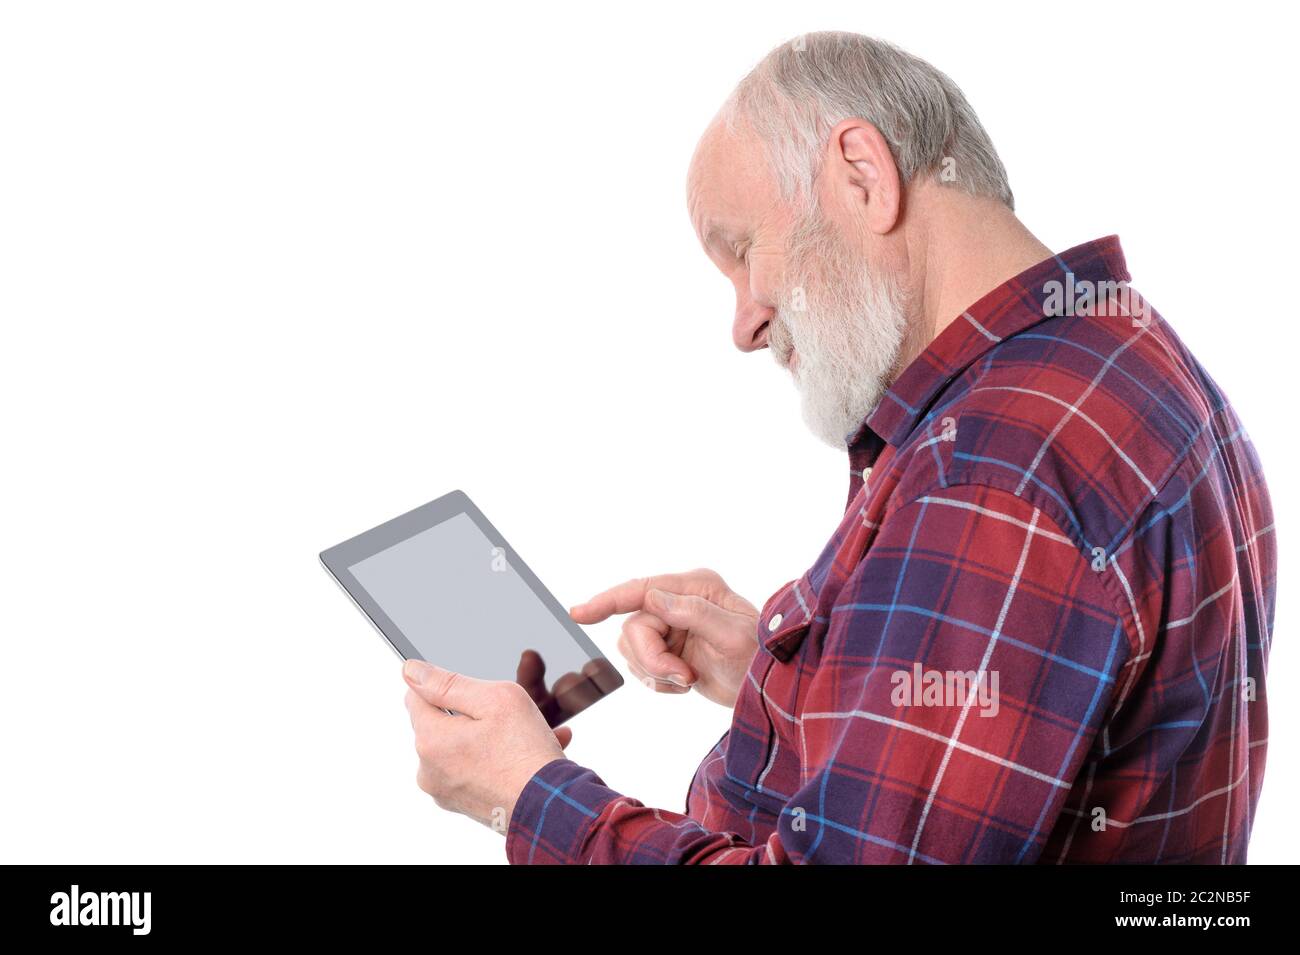 Man smiling tout en le faisant avec quelque chose à l'écran de l'ordinateur tablette, isolated on white Banque D'Images